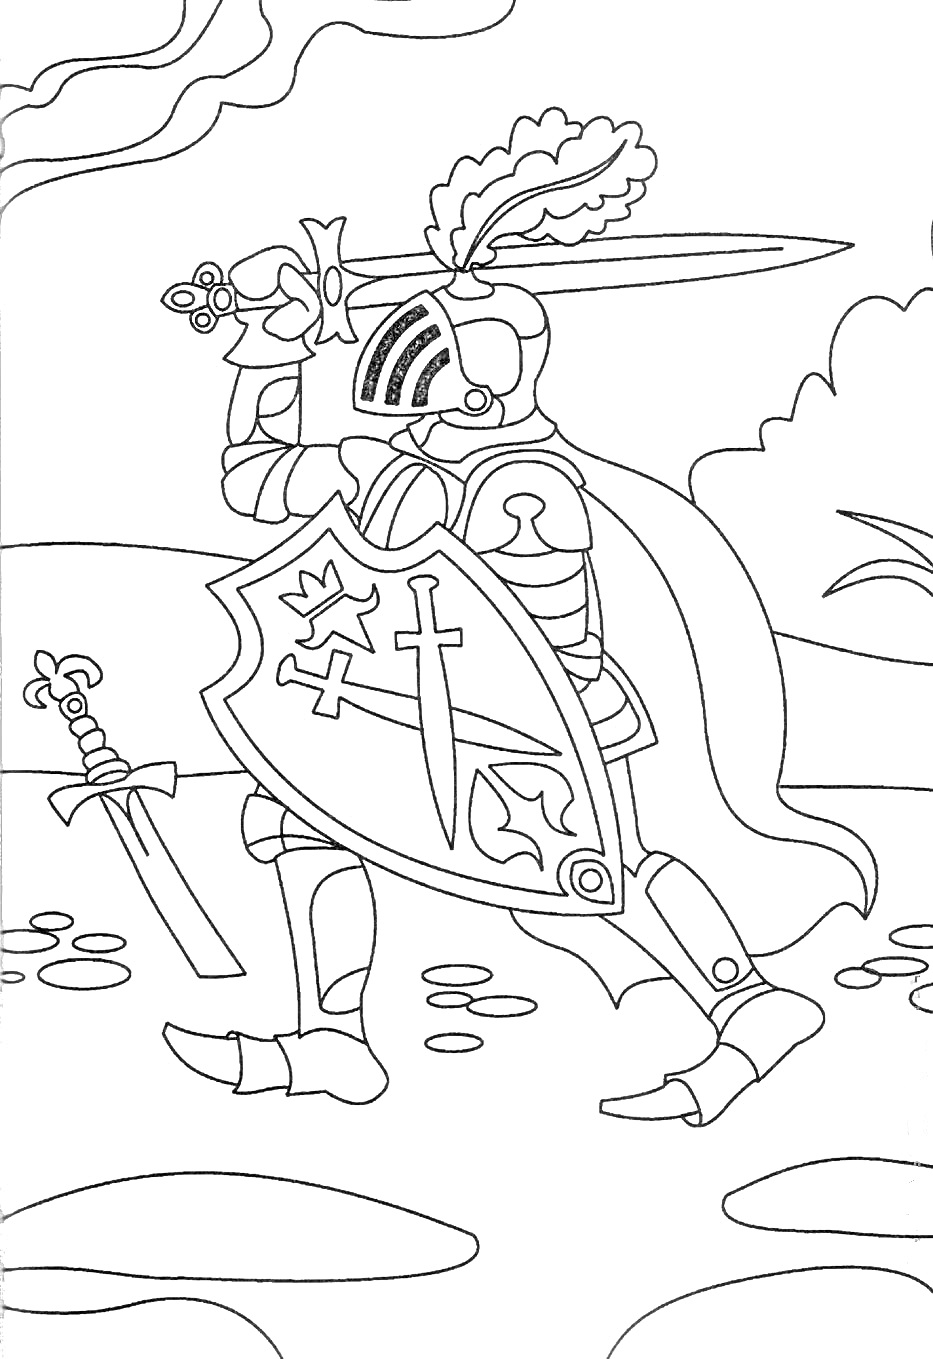 Рыцарь с мечом, щитом и пером на шлеме, на фоне природы